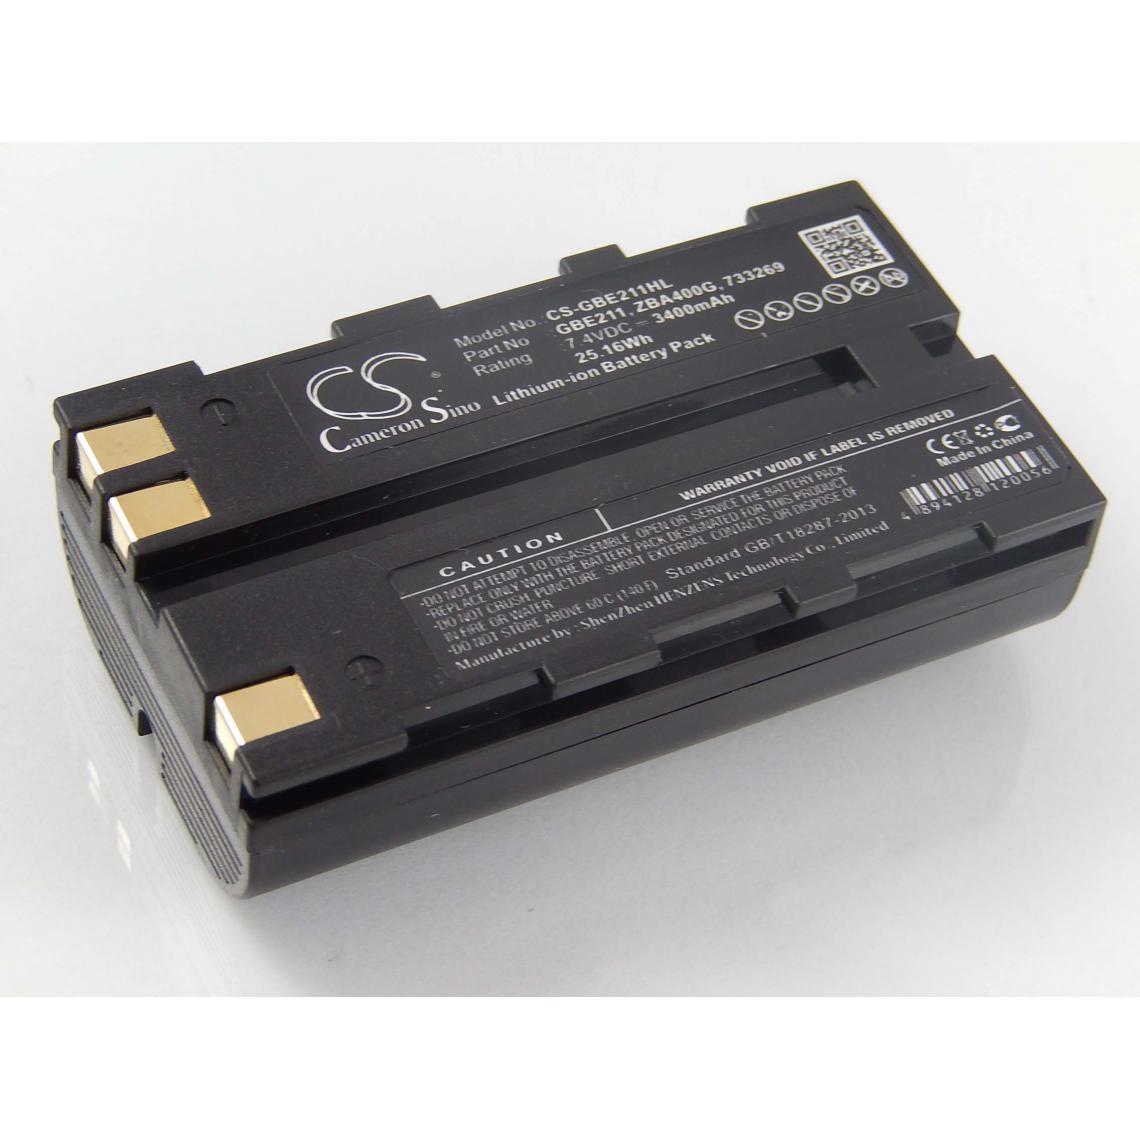 Vhbw - vhbw Batterie compatible avec Leica GPS900, GRX1200, GS10, GS15 dispositif de mesure laser, outil de mesure (3400mAh, 7,4V, Li-ion) - Piles rechargeables